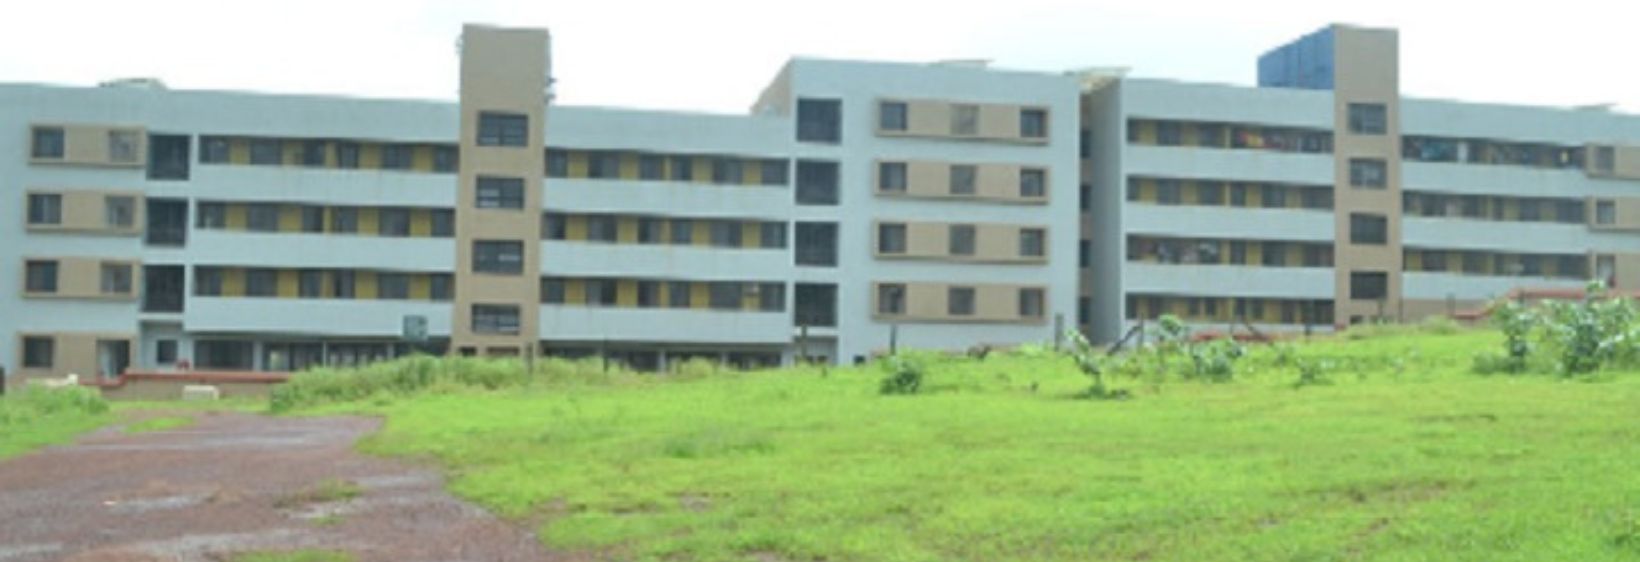 M.E.S School of Nursing - Ratnagiri